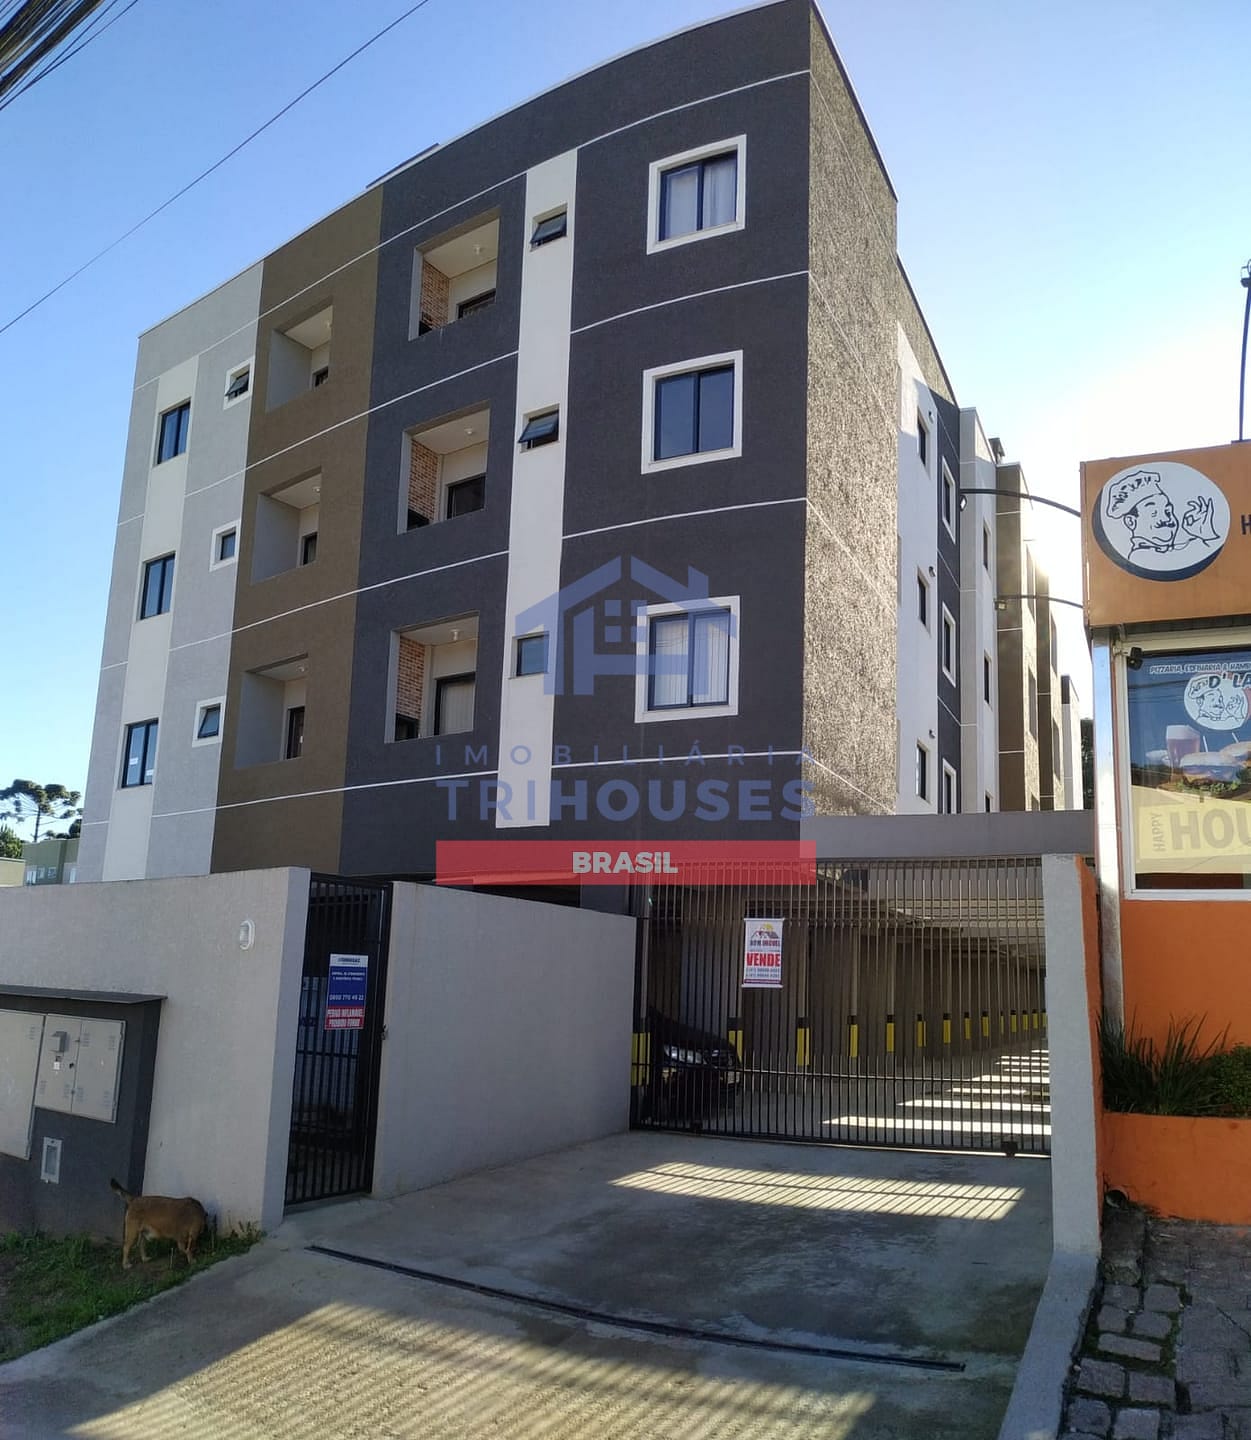 Apartamento à venda, 3 quartos, sendo 1 suíte, com 1 vaga de garagem,  situado no bairro São Pedro, São José dos Pinhais, PR - IMOBILIÁRIA  TRIHOUSES